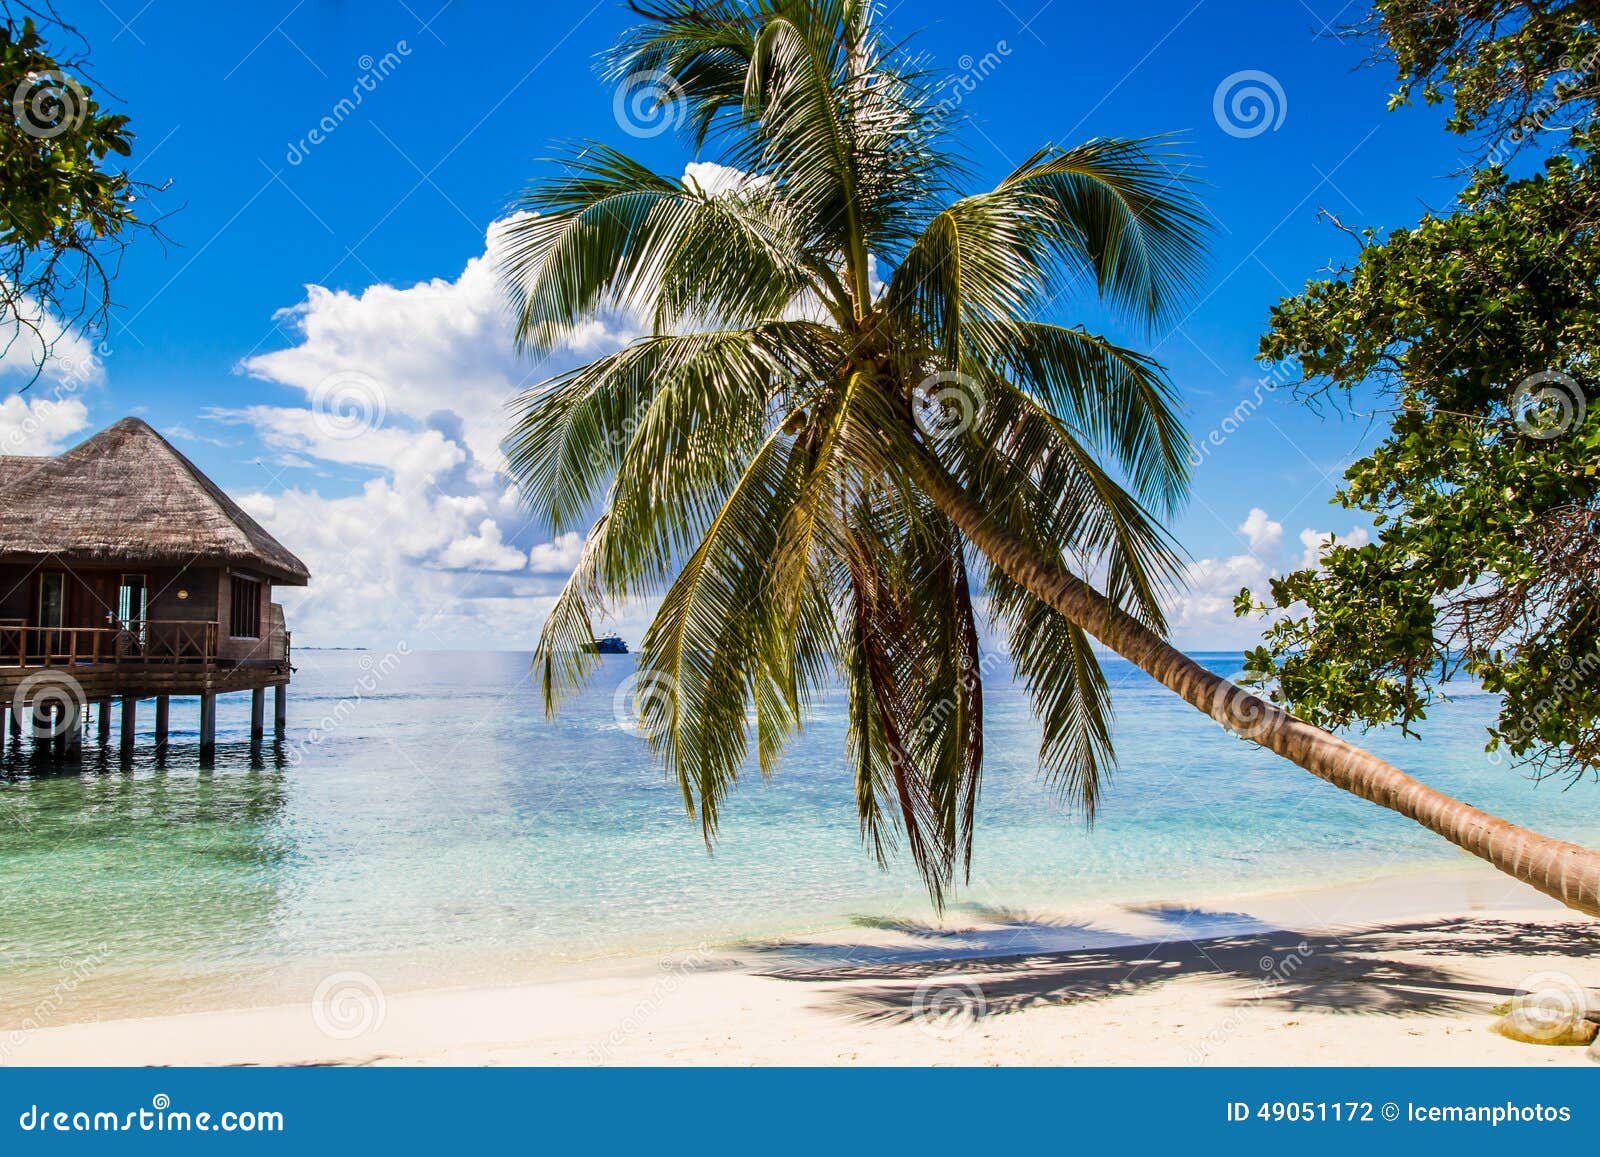 white sandy tropical beach in maldives